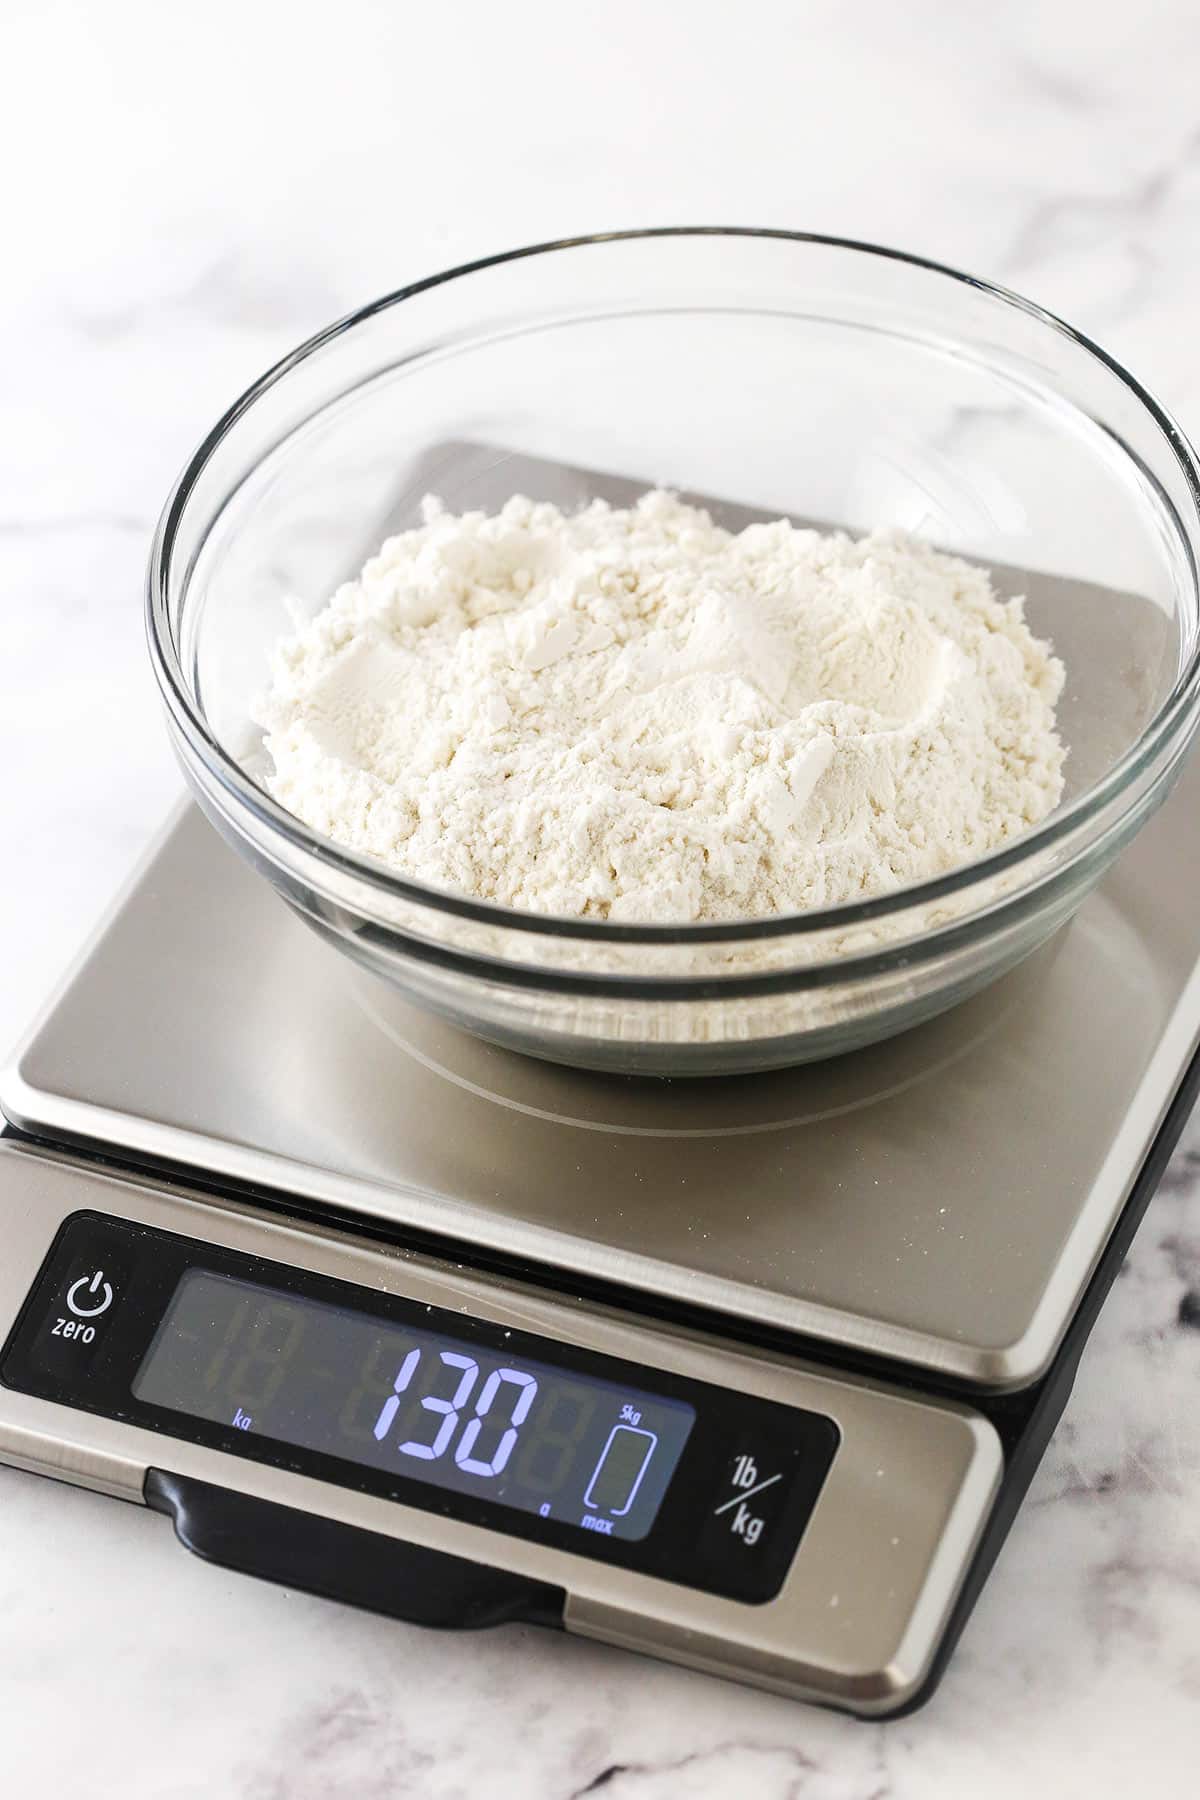 https://www.lifeloveandsugar.com/wp-content/uploads/2022/09/How-to-measure-flour9.jpg